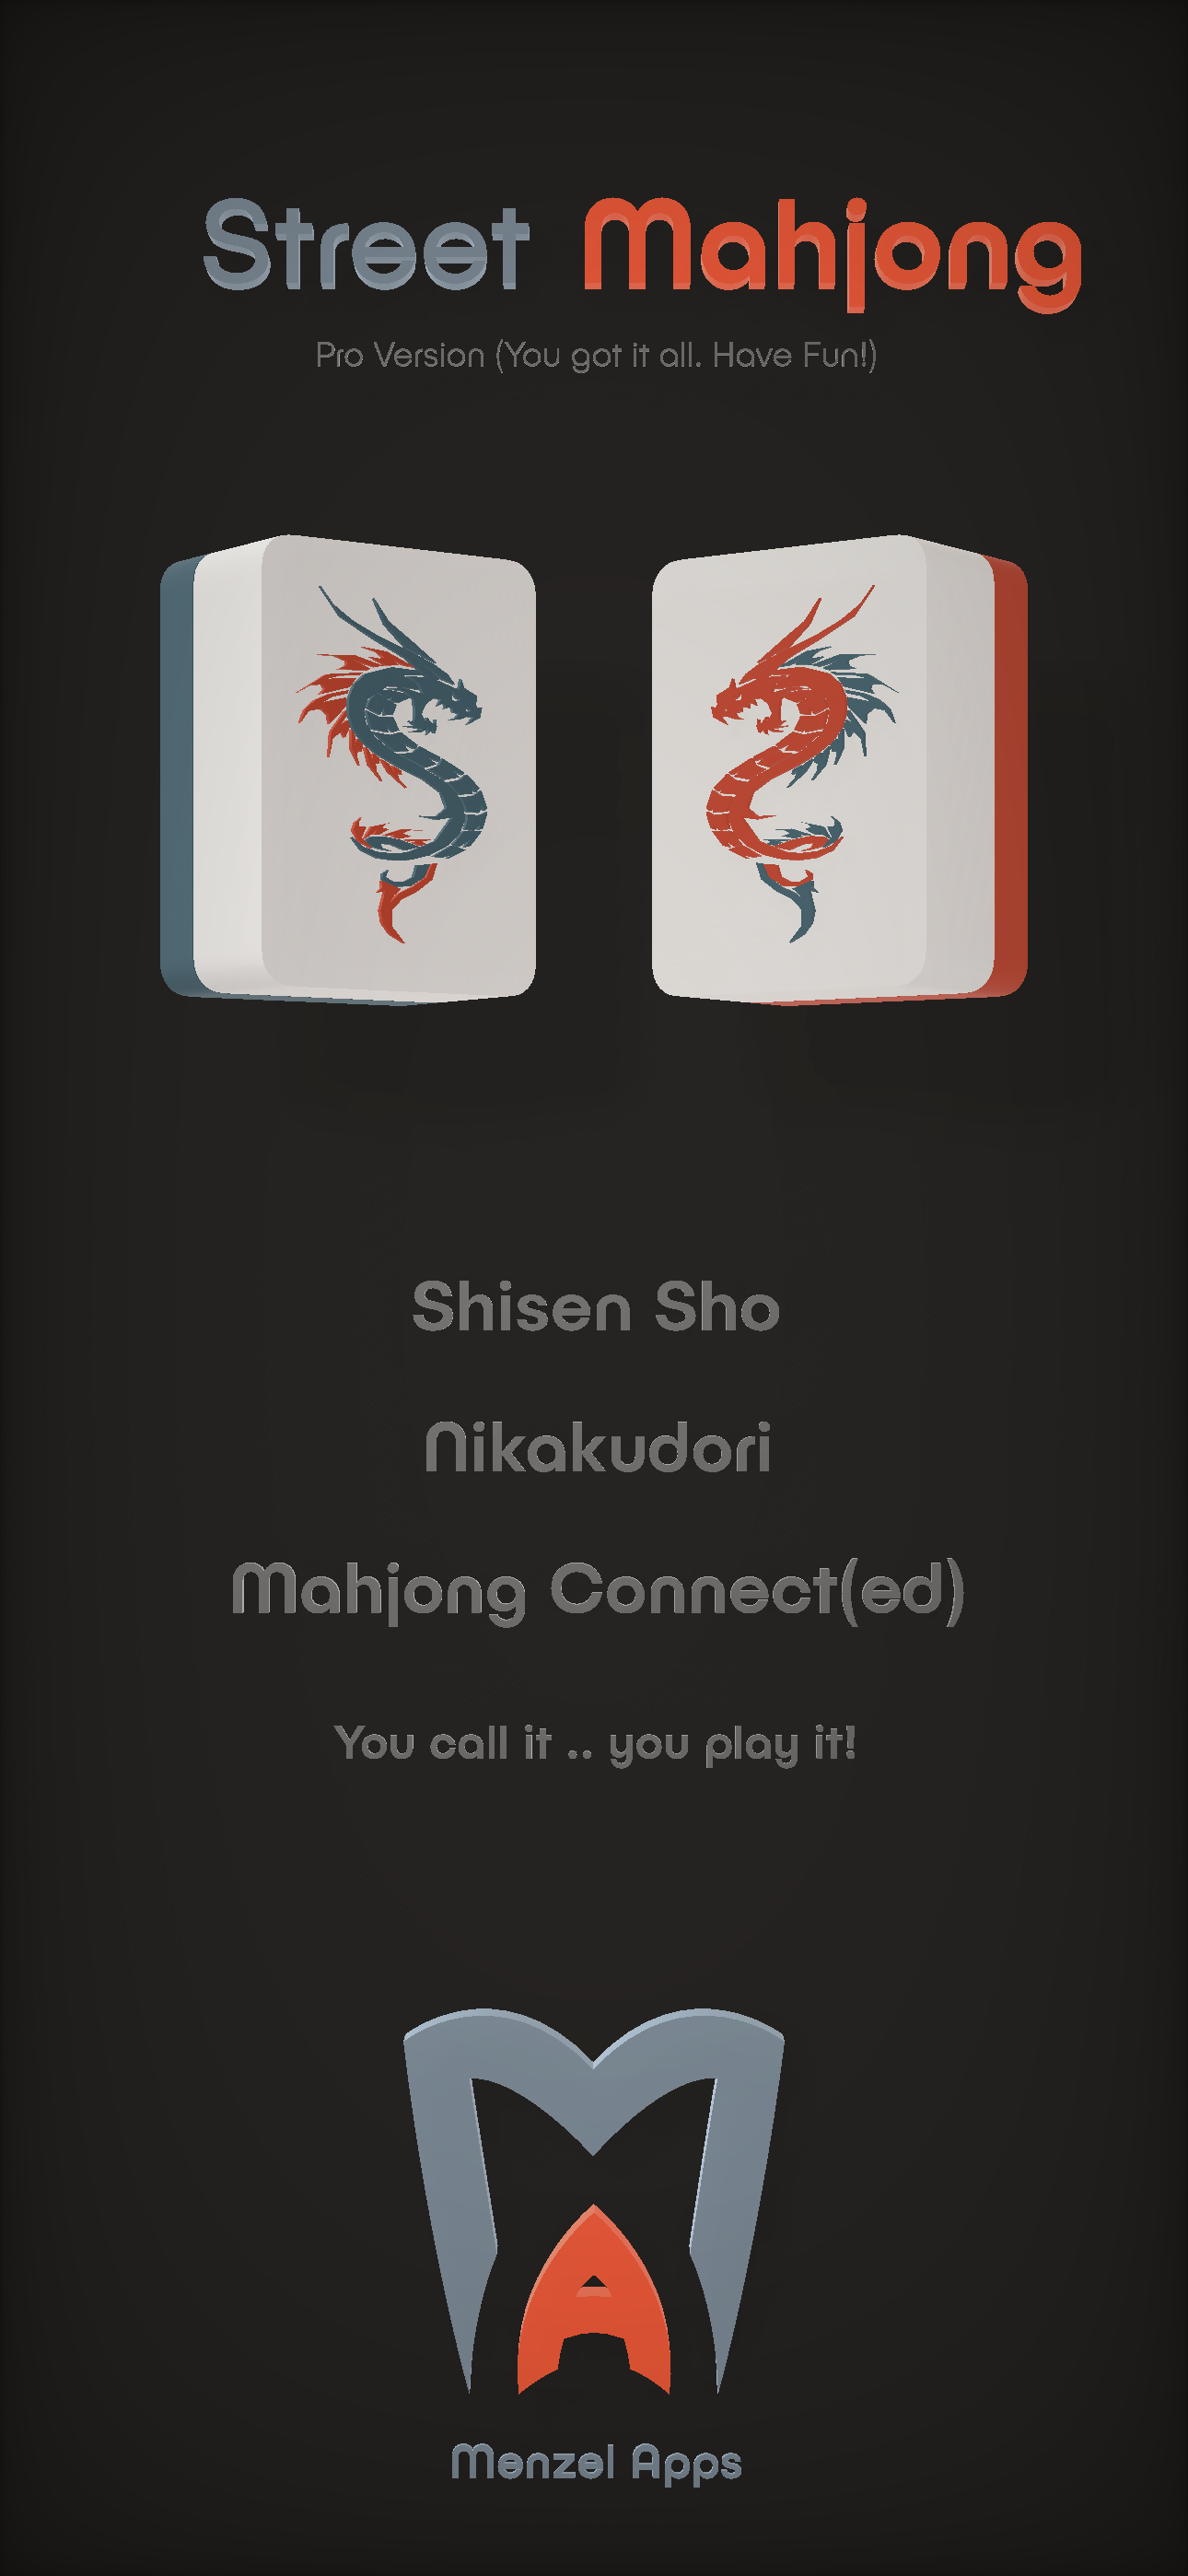 Street Mahjong - Shisen Sho - Nikakudori - Mahjong Connect - Mahjong Connected